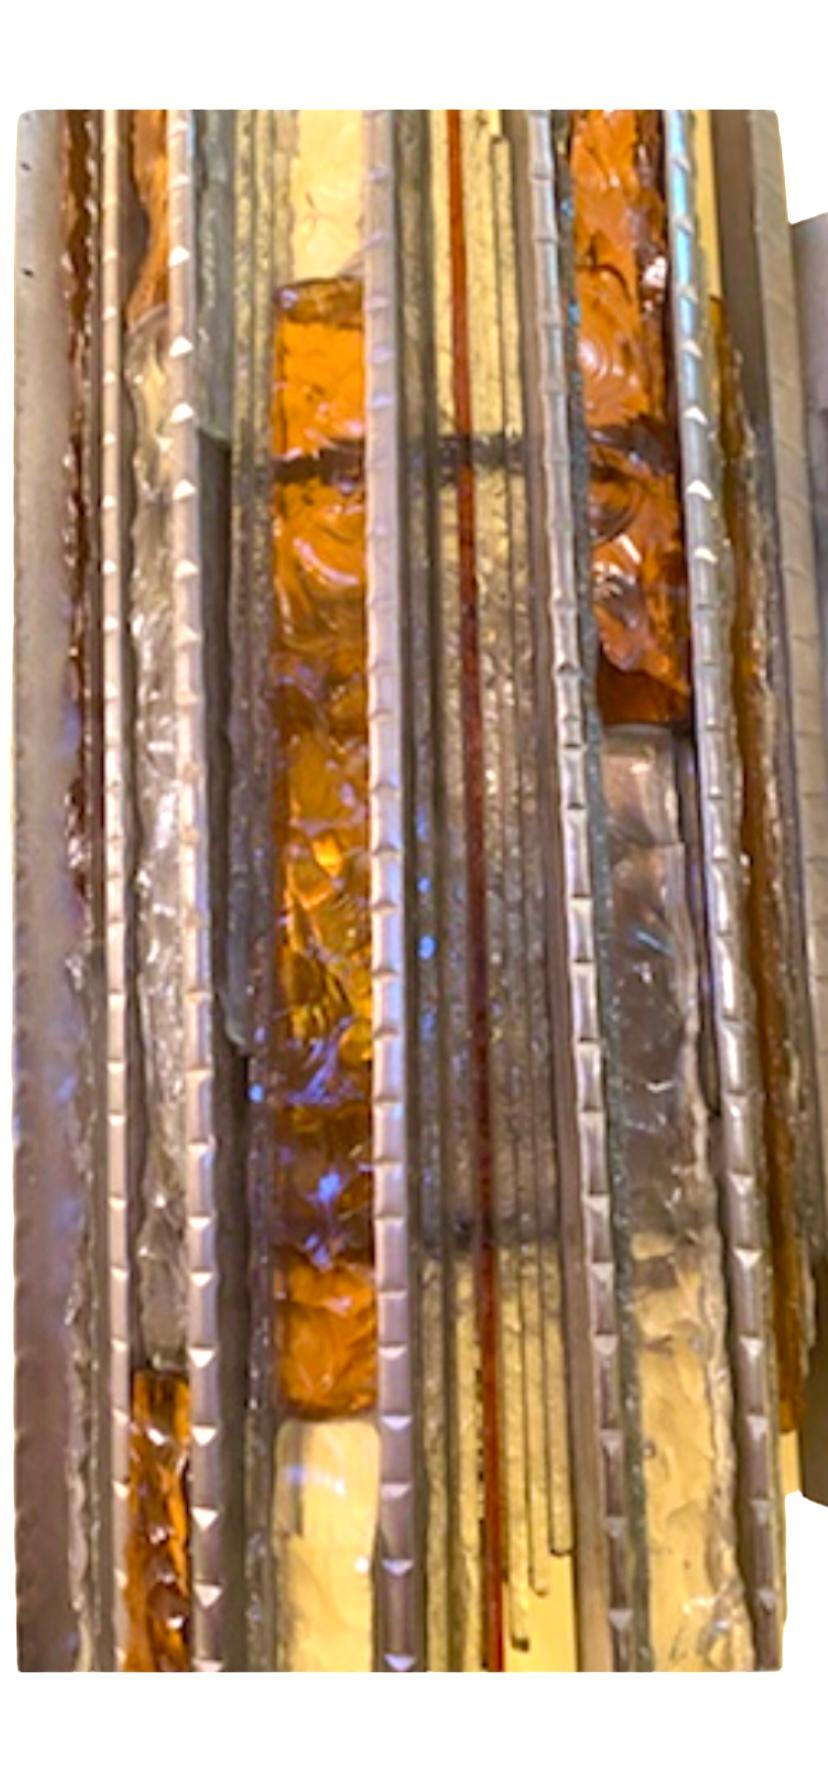 Exceptionnelle applique murale Biancardi & Jordan en verre Murano surdimensionné avec structure métallique. Le design et la qualité du verre font de cette pièce le meilleur du design italien.
Ces appliques uniques Biancardi &Jordan de Poliarte en